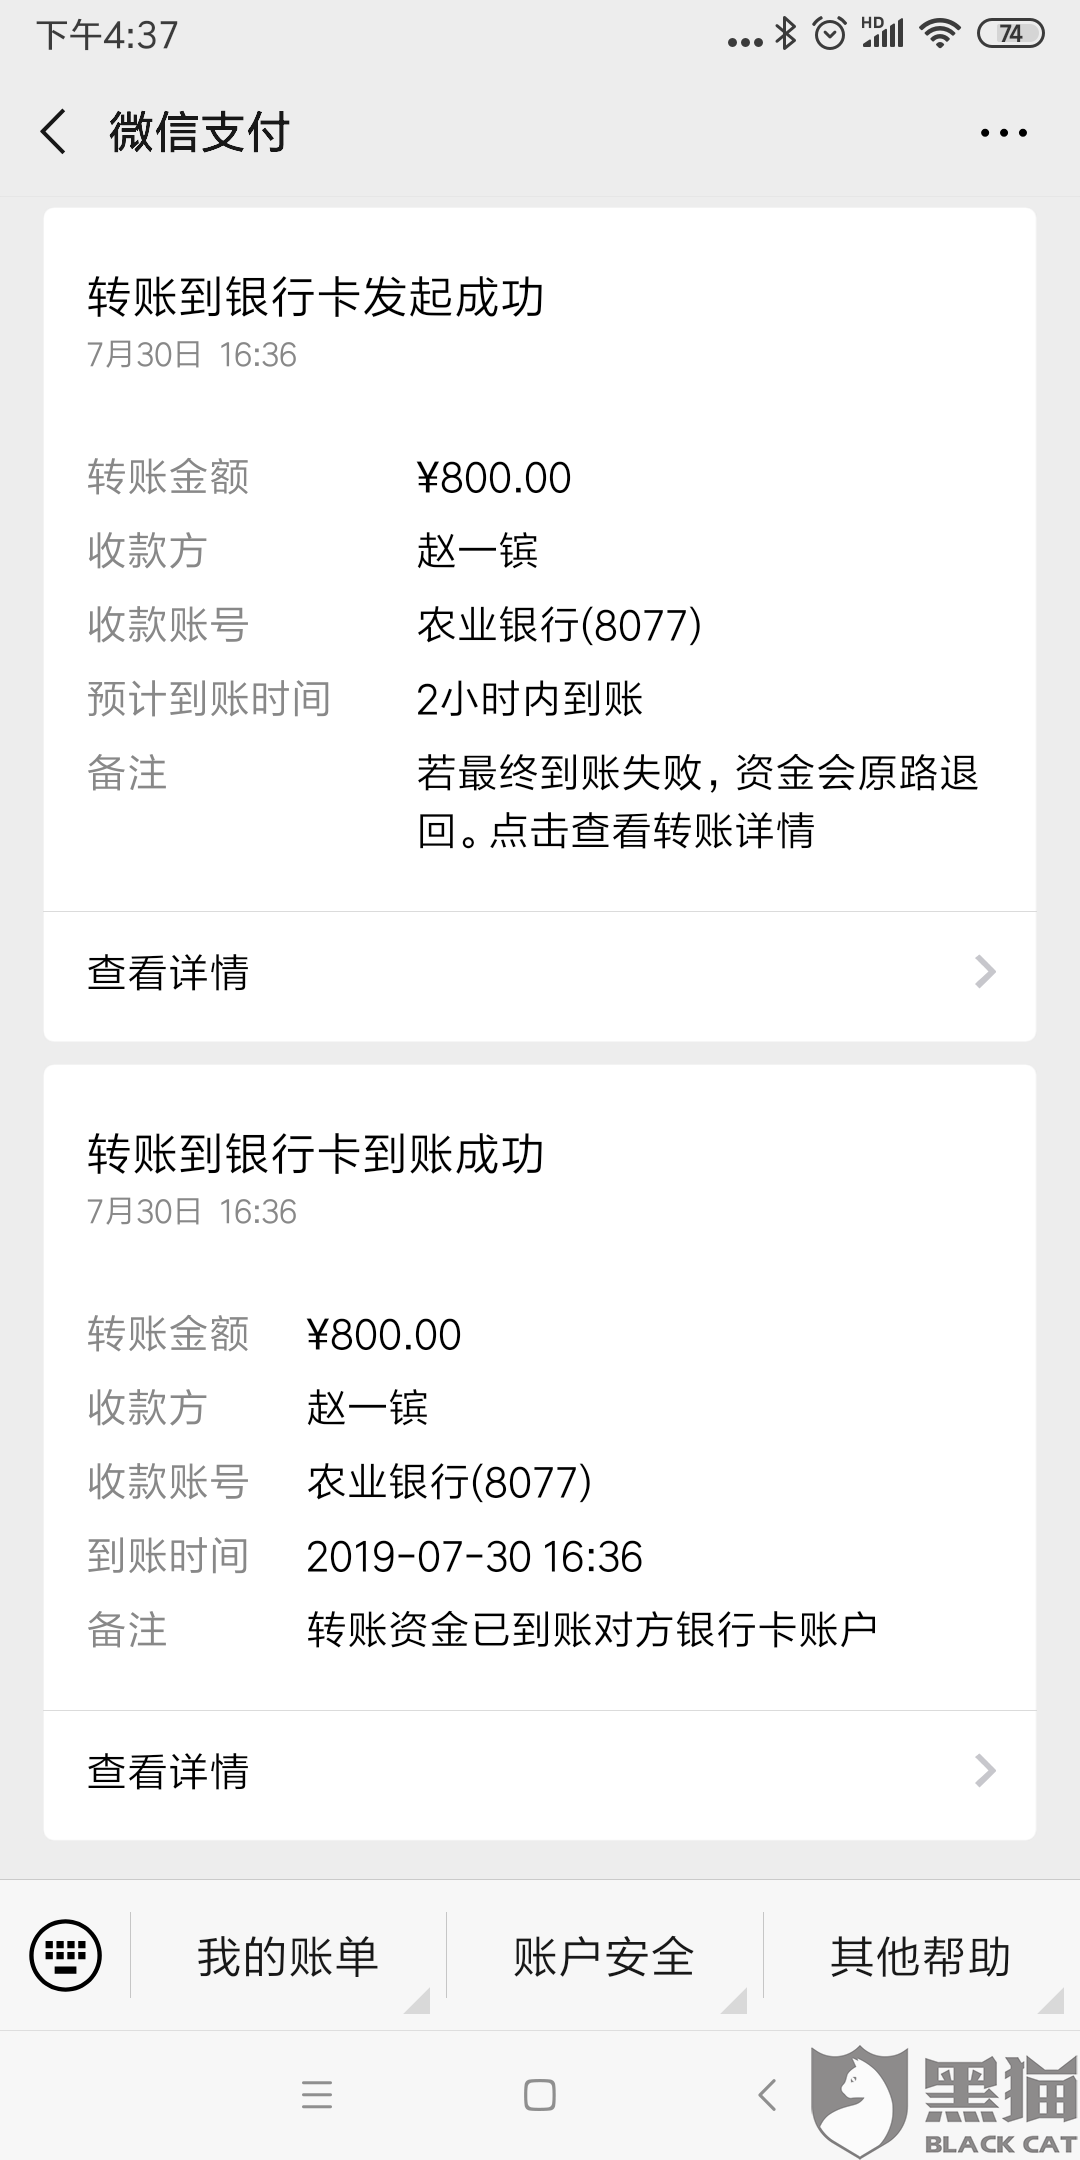 "匿名"投诉"北京微粒快贷有限公司假冒网商银行",要求退款